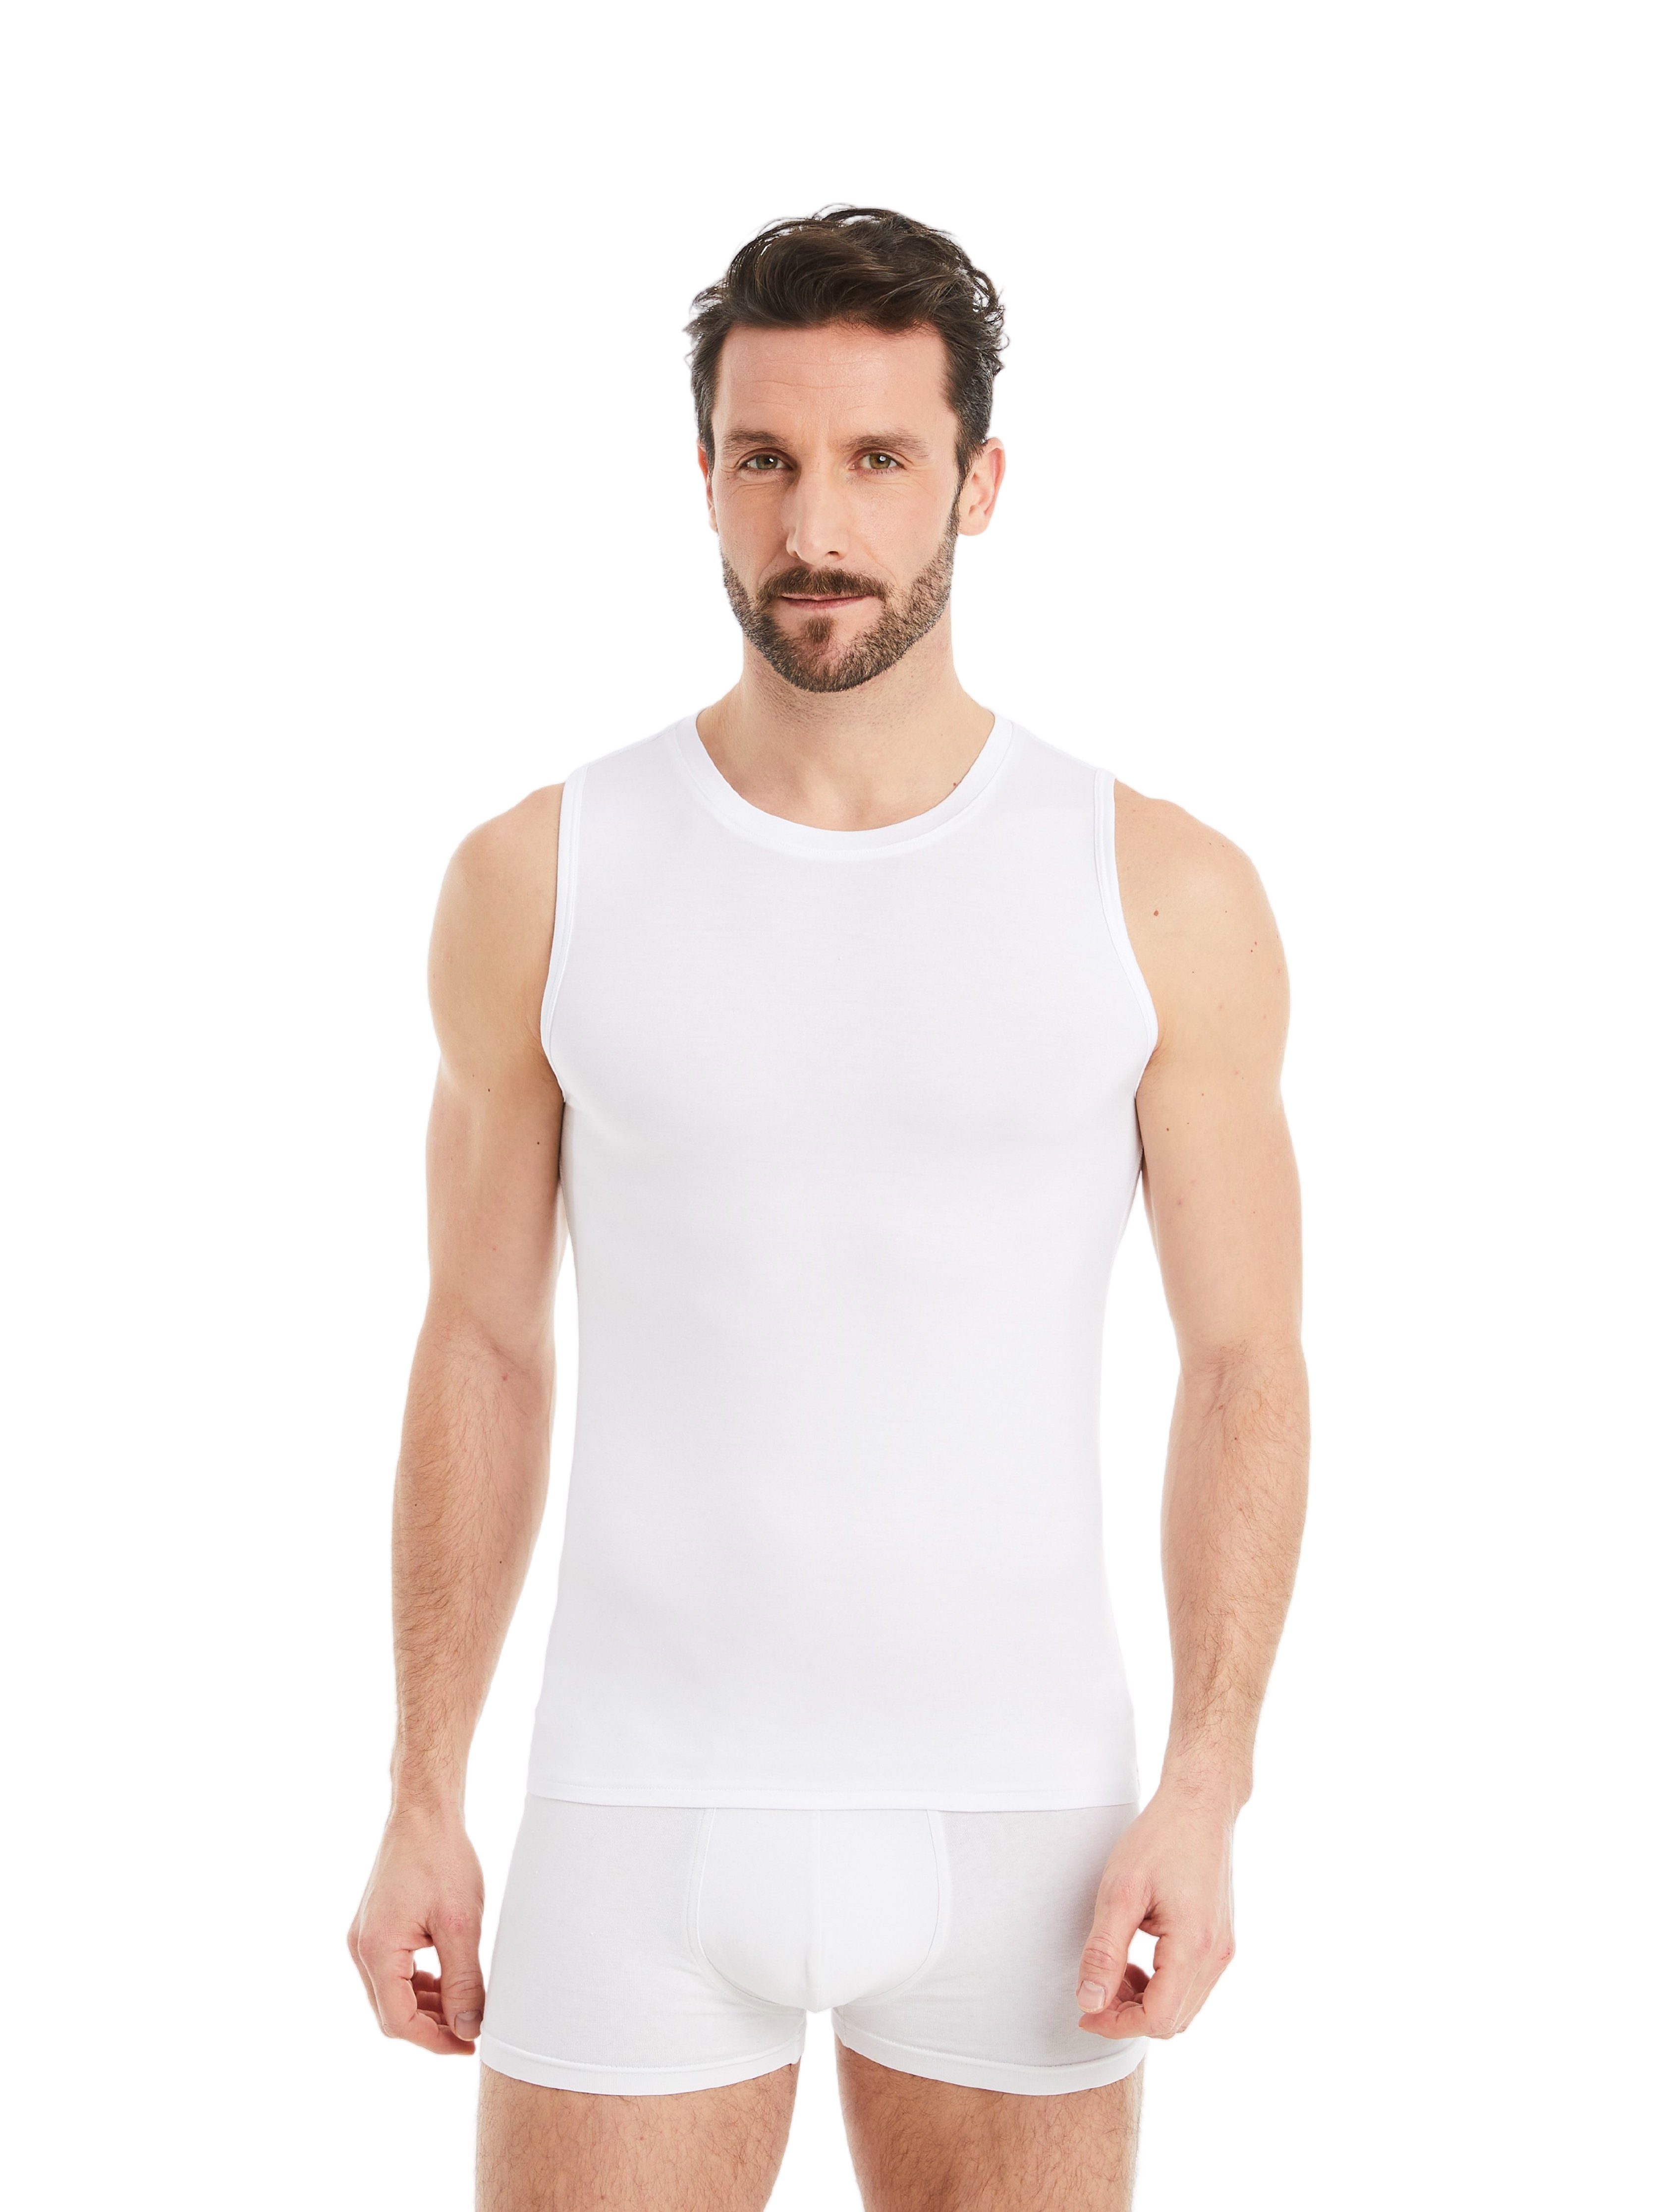 Unterhemd mit Ärmellos Stoff, Design Achselhemd Herren Rundhals feiner Weiß FINN Business Micro-Modal maximaler Tragekomfort